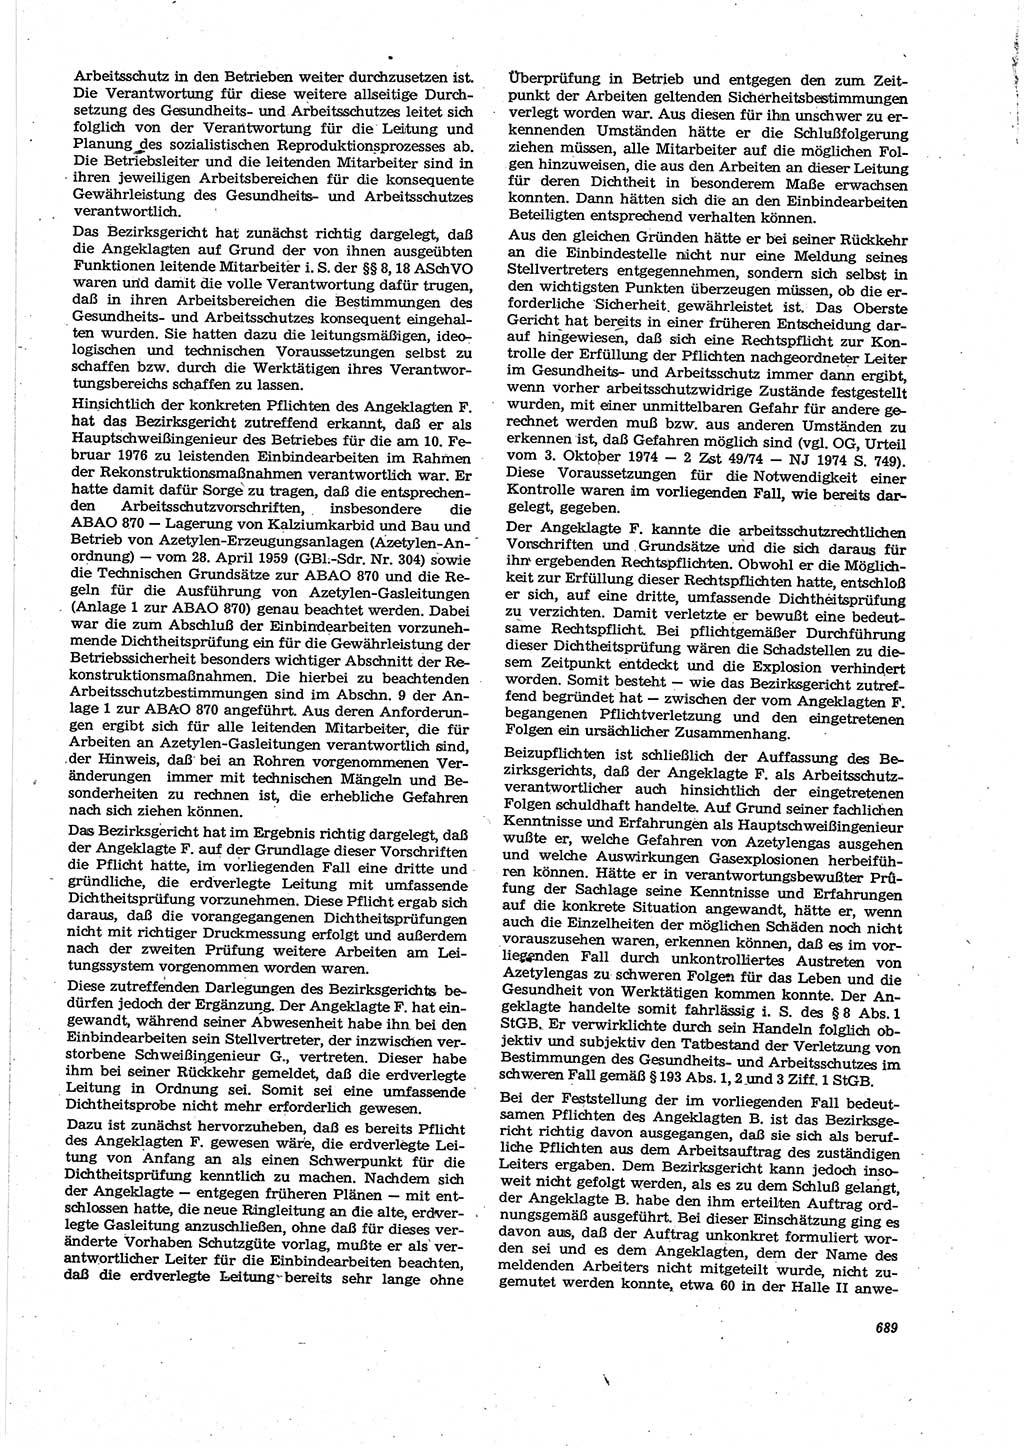 Neue Justiz (NJ), Zeitschrift für Recht und Rechtswissenschaft [Deutsche Demokratische Republik (DDR)], 30. Jahrgang 1976, Seite 689 (NJ DDR 1976, S. 689)